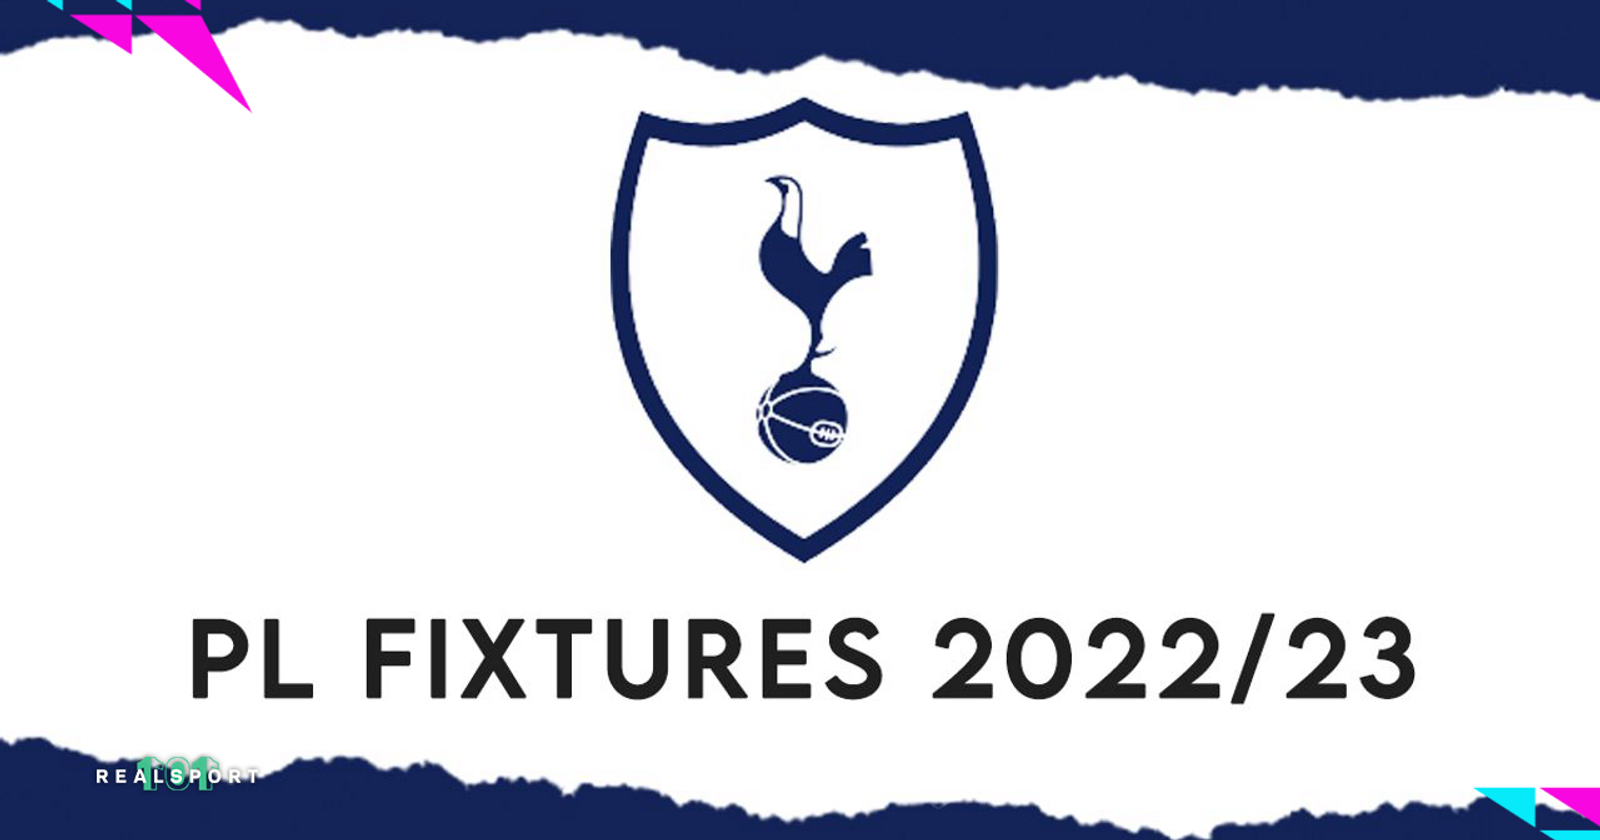 Tottenham Hotspur: Premier League 2022/23 fixtures and schedule